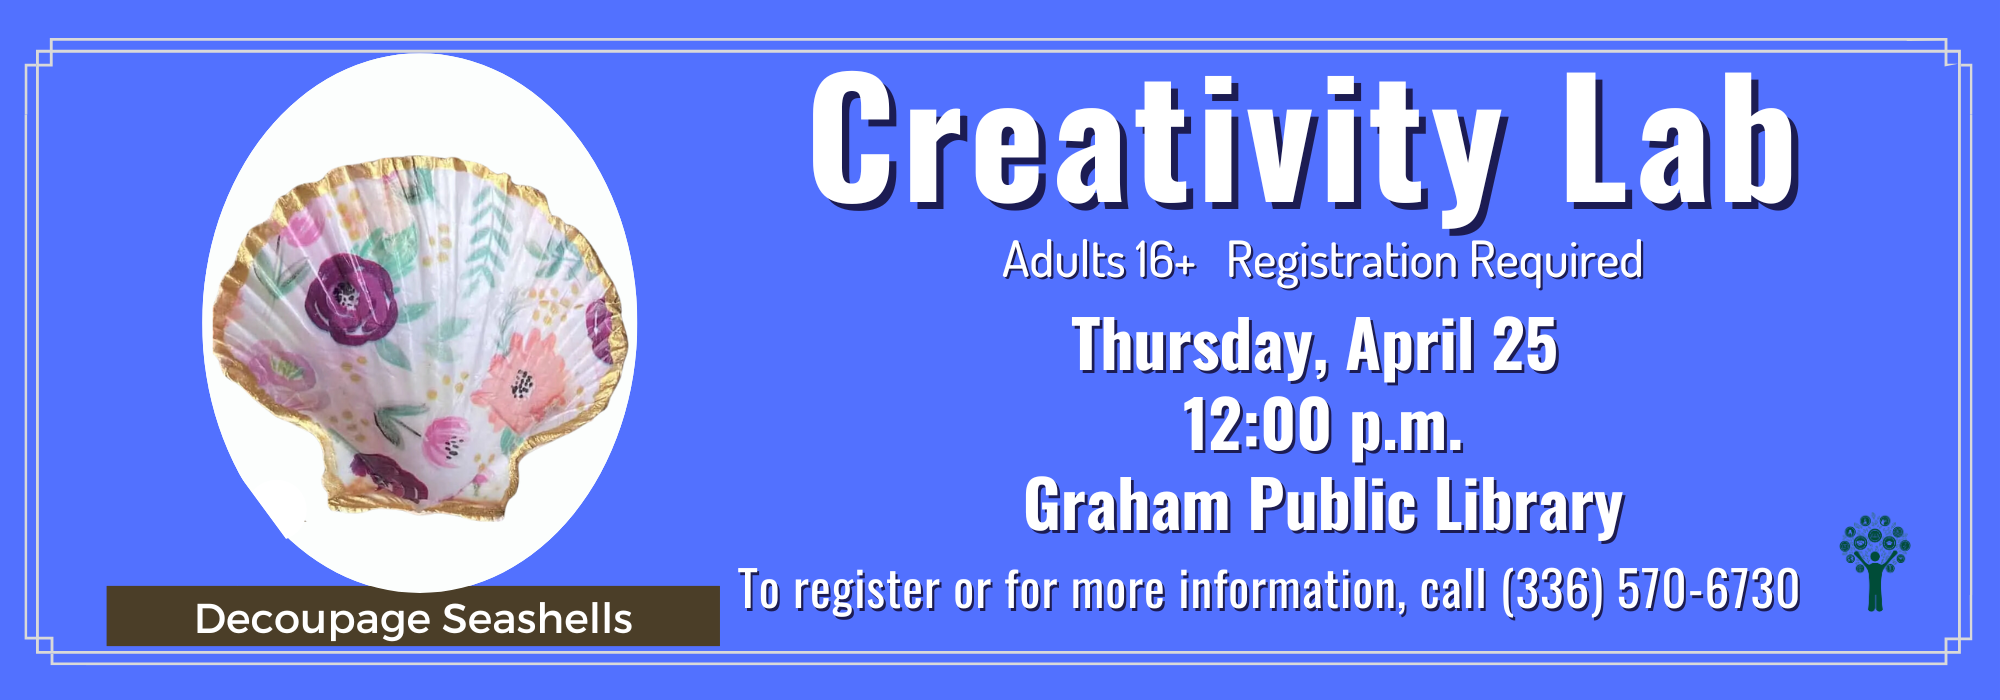 4.25 at Noon - Creativity Lab at Graham